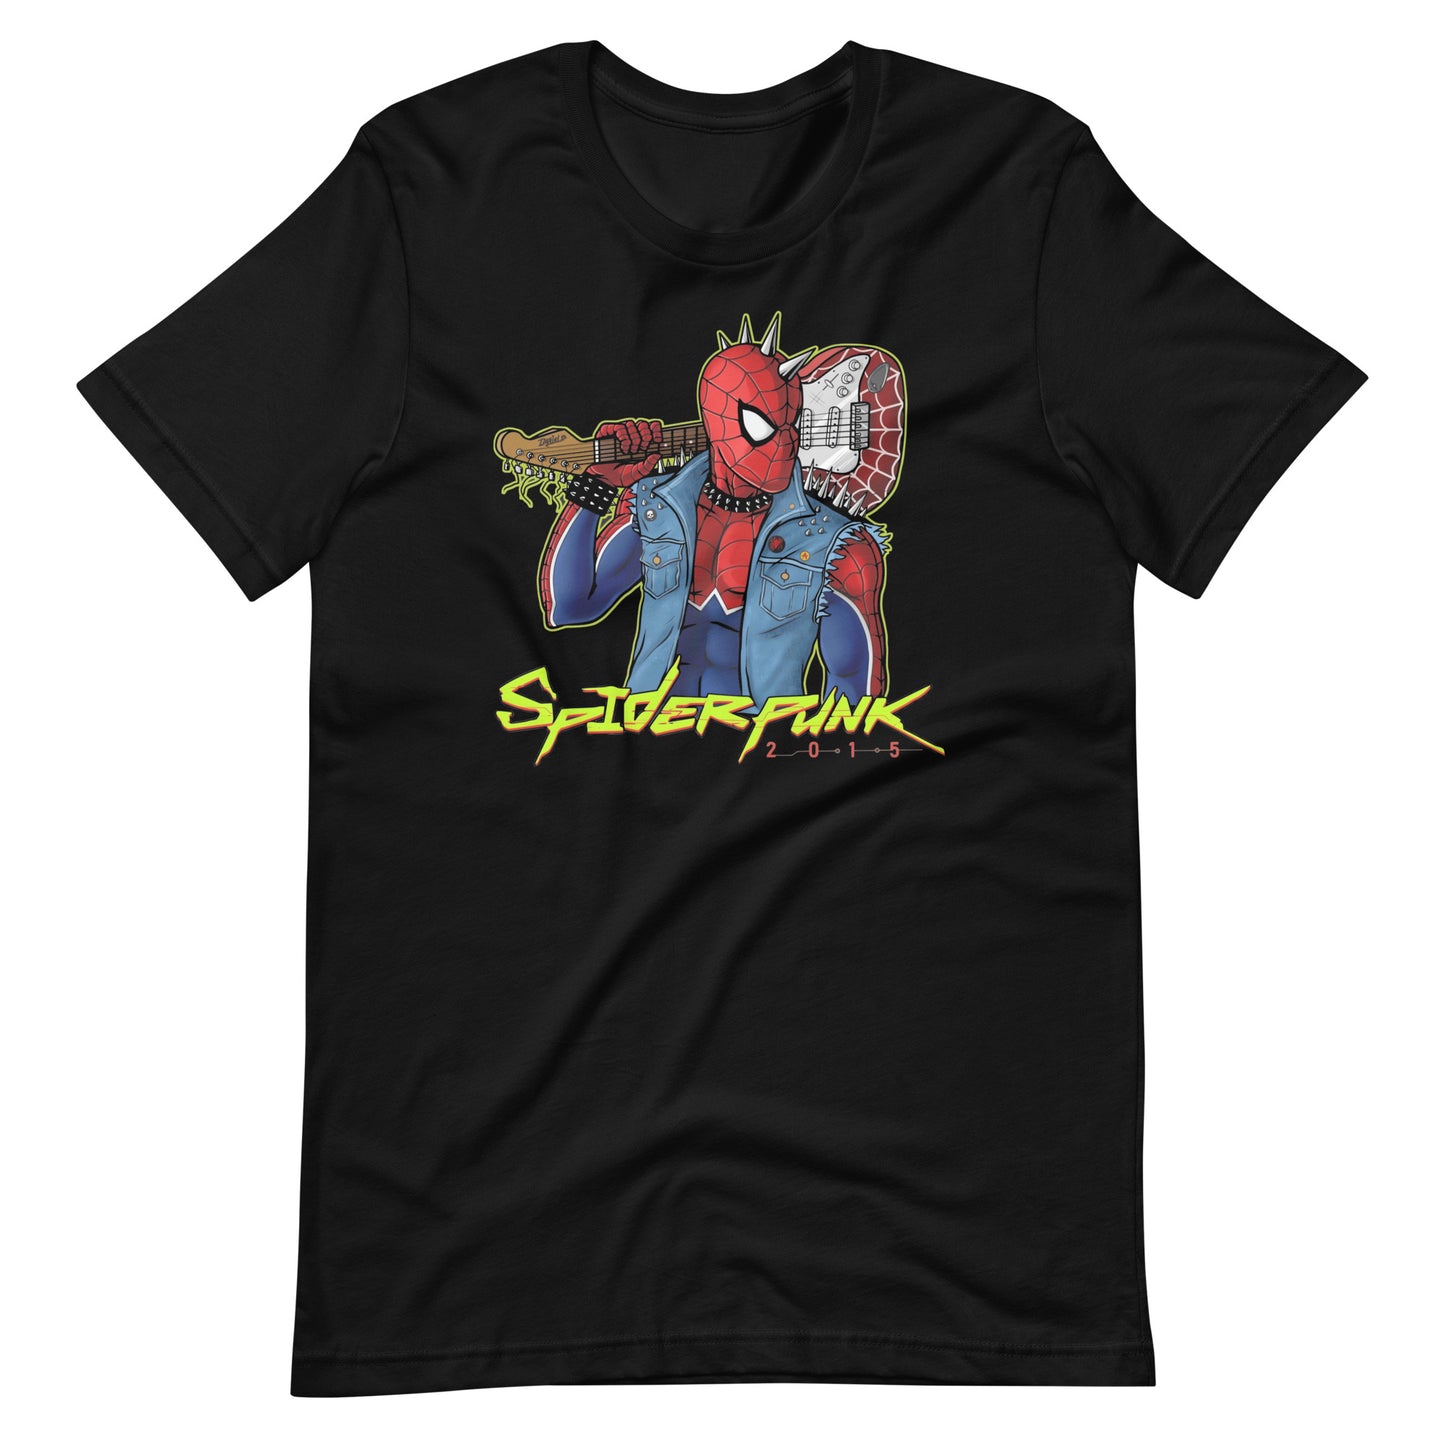 ¡Compra el mejor merchandising en Superstar! Encuentra diseños únicos y de alta calidad, Playera de Spider Punk